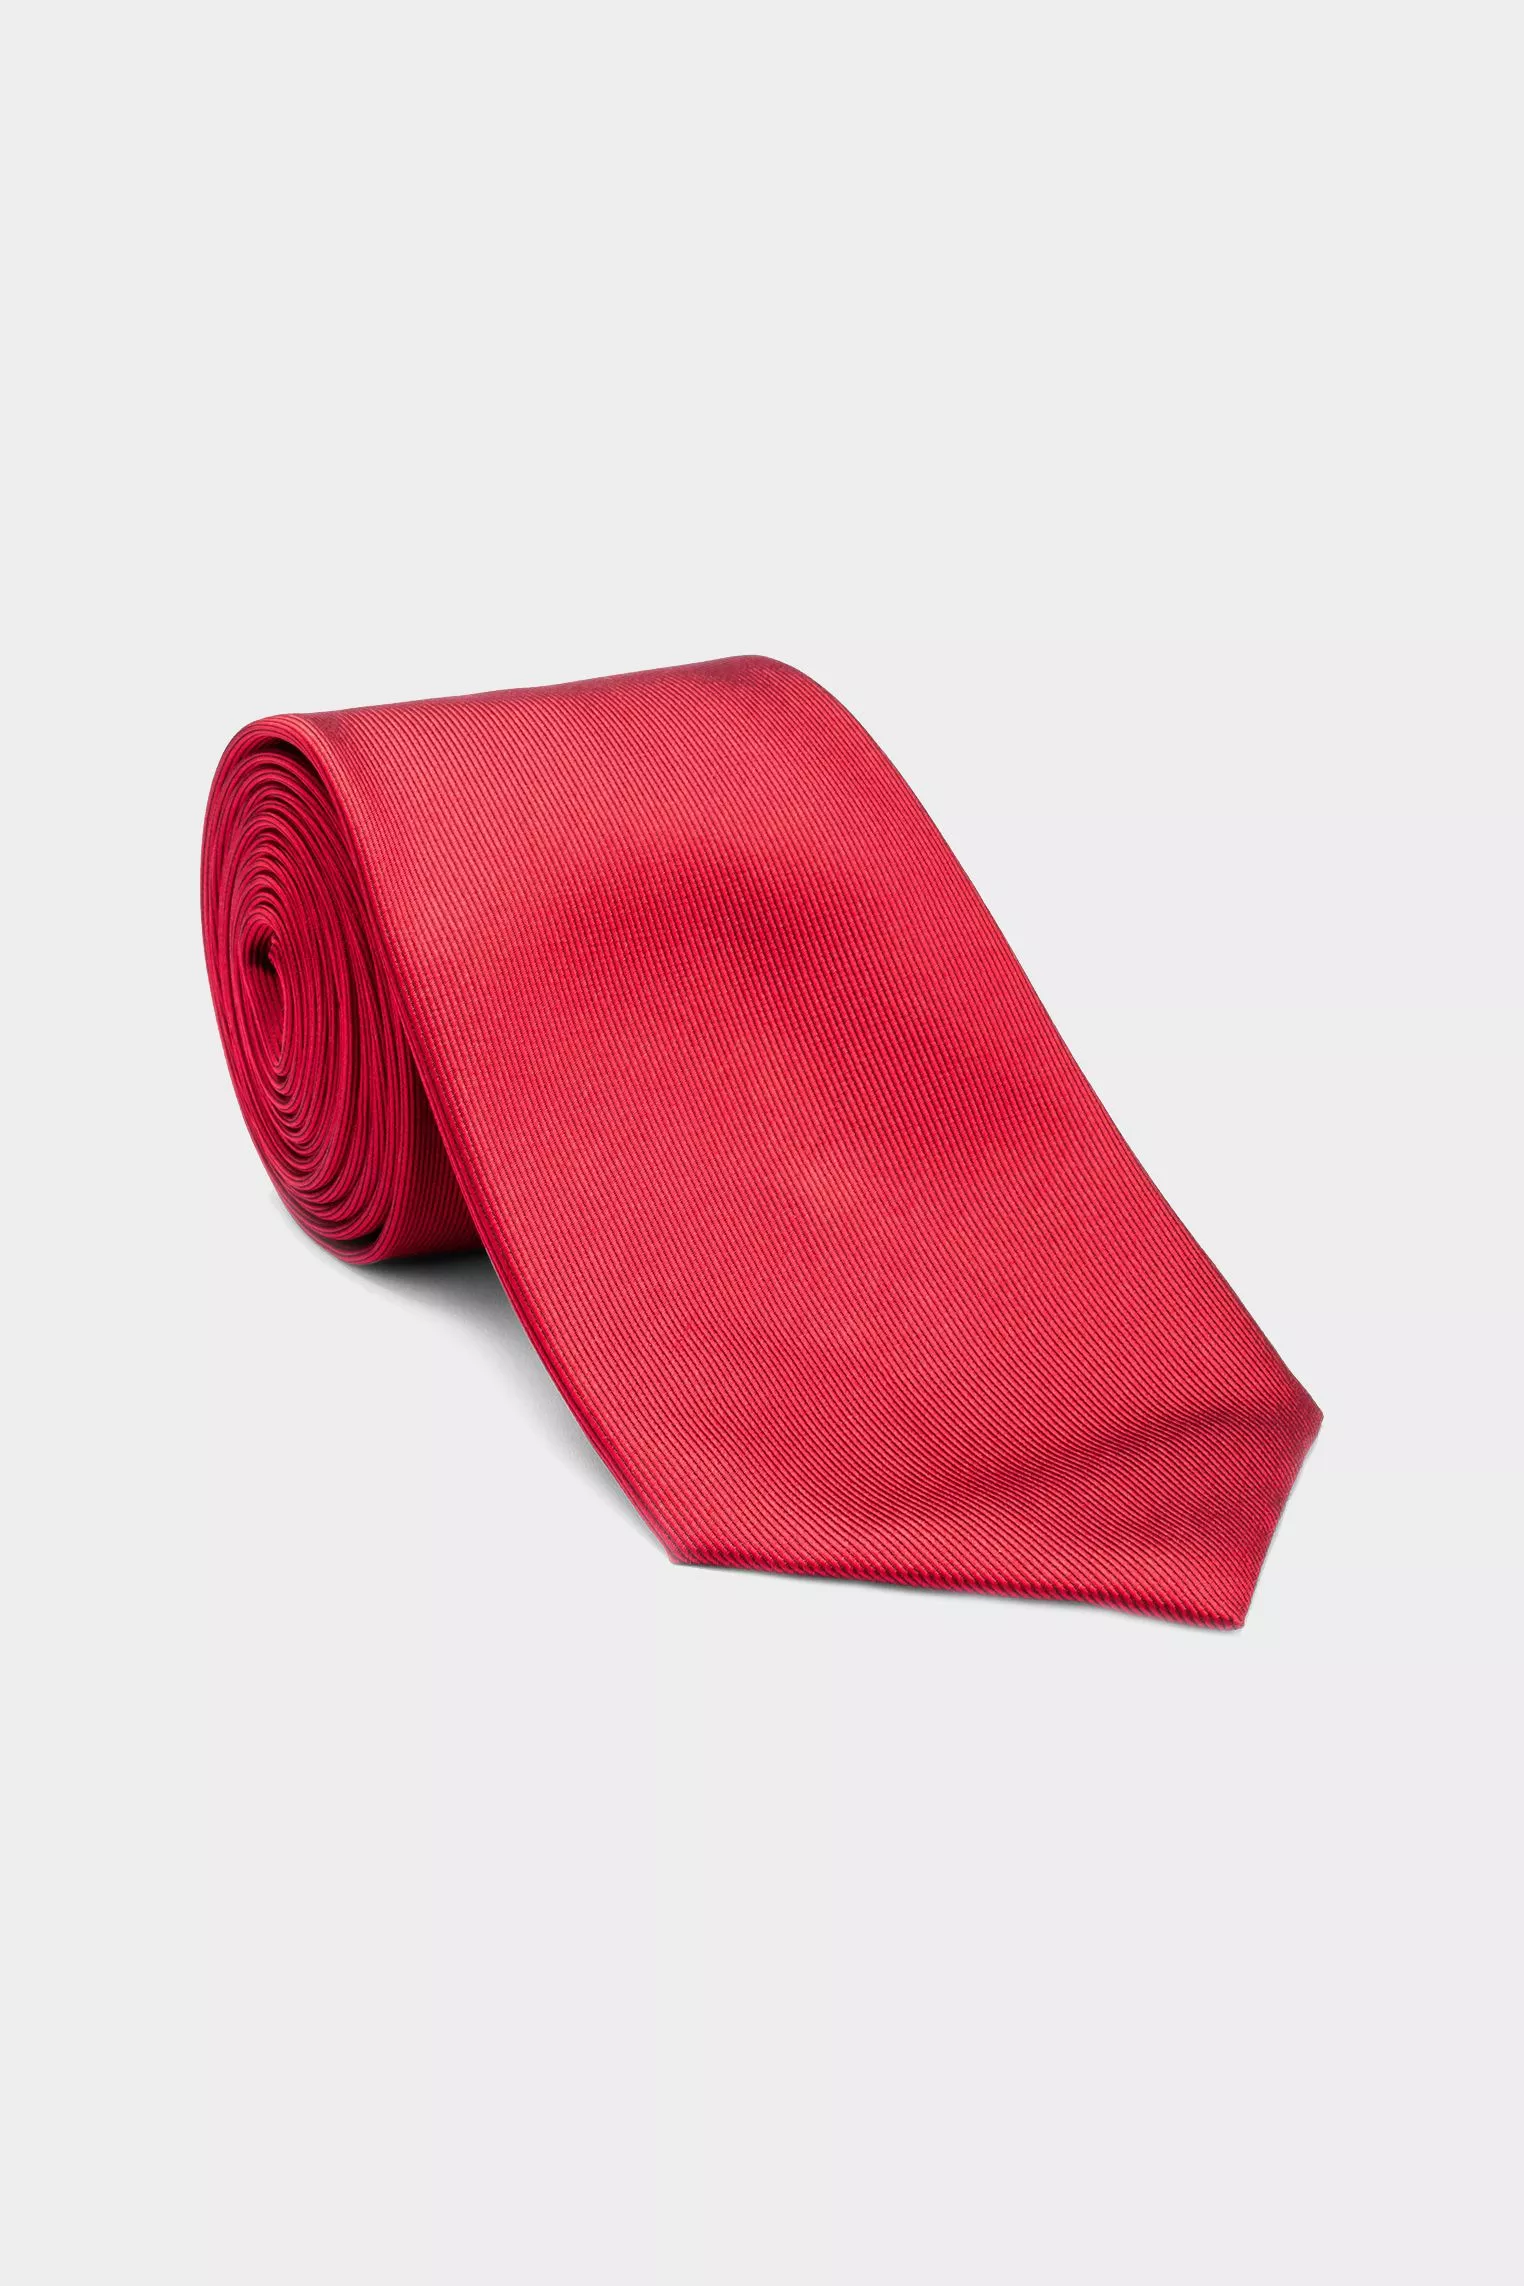 галстук LEROY красный LEROY_K02702_561 ,photo 1